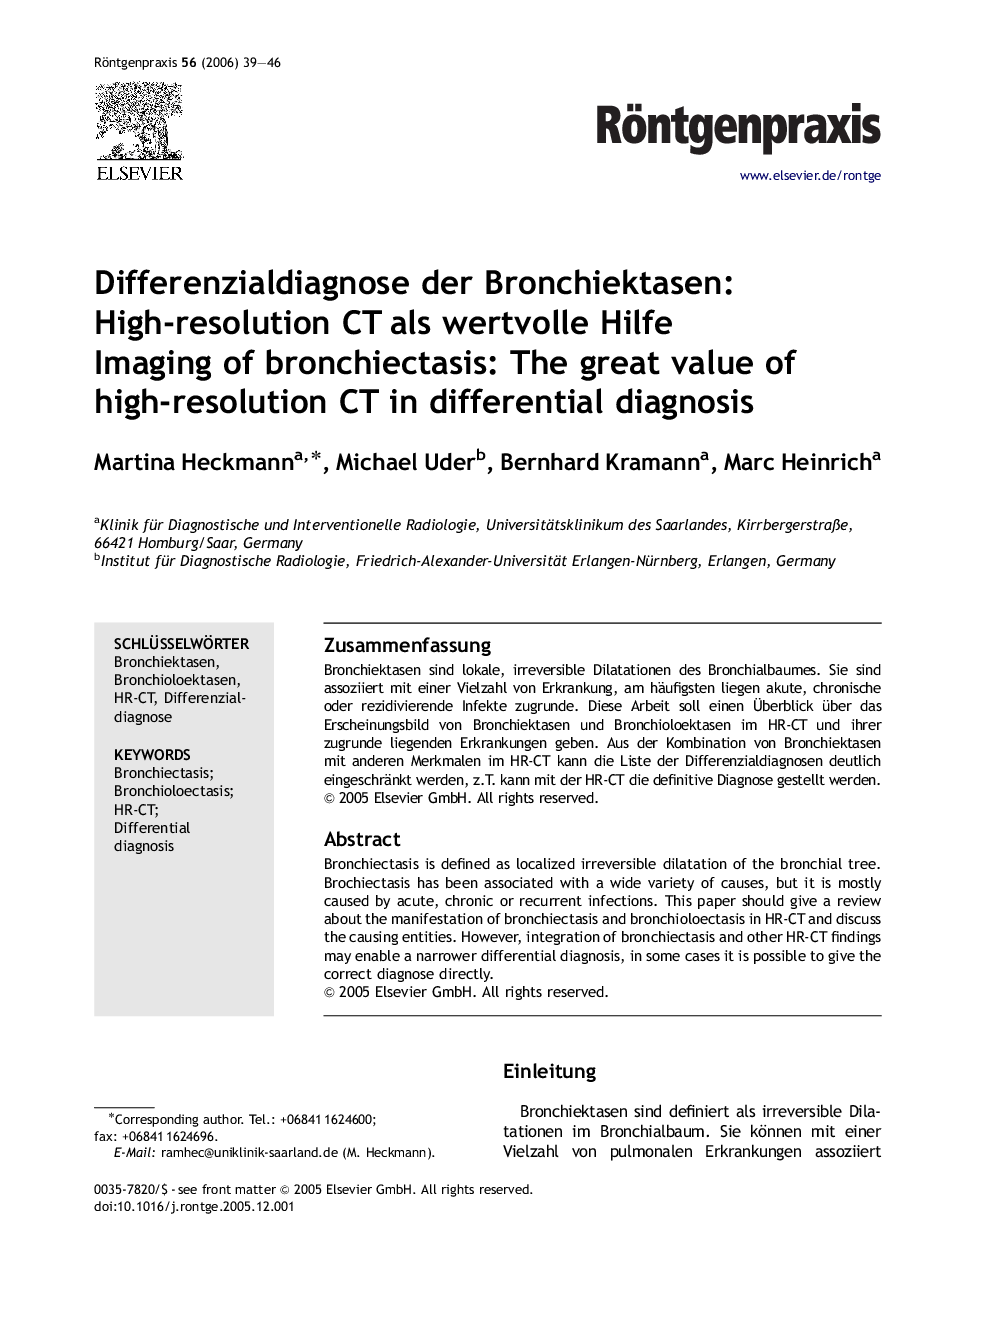 Differenzialdiagnose der Bronchiektasen: High-resolution CT als wertvolle Hilfe: Imaging of bronchiectasis: The great value of high-resolution CT in differential diagnosis